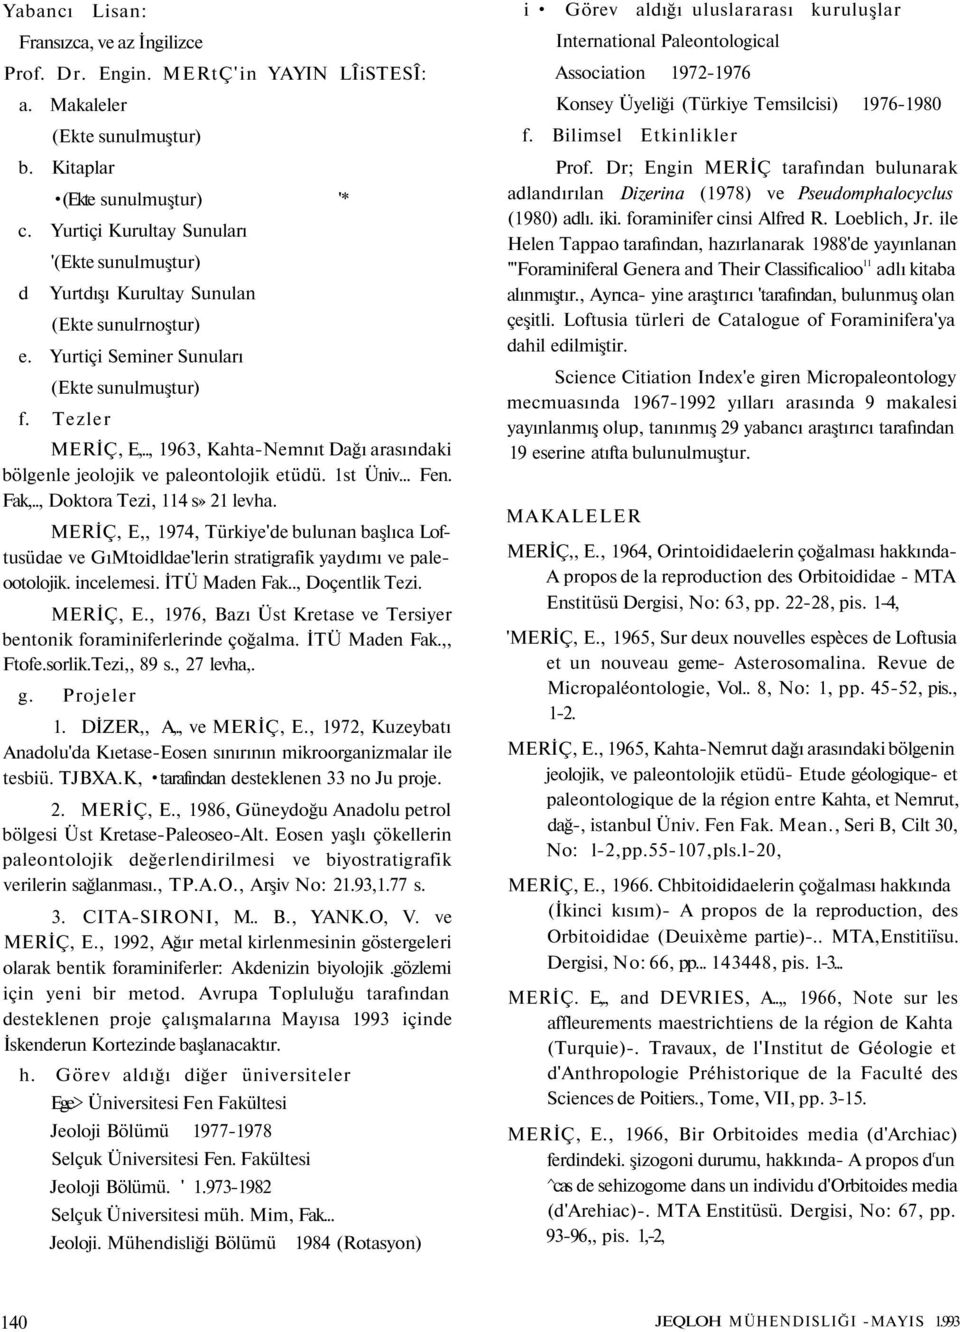 ., 1963, Kahta-Nemnıt Dağı arasındaki bölgenle jeolojik ve paleontolojik etüdü. 1st Üniv... Fen. Fak,.., Doktora Tezi, 114 s» 21 levha.